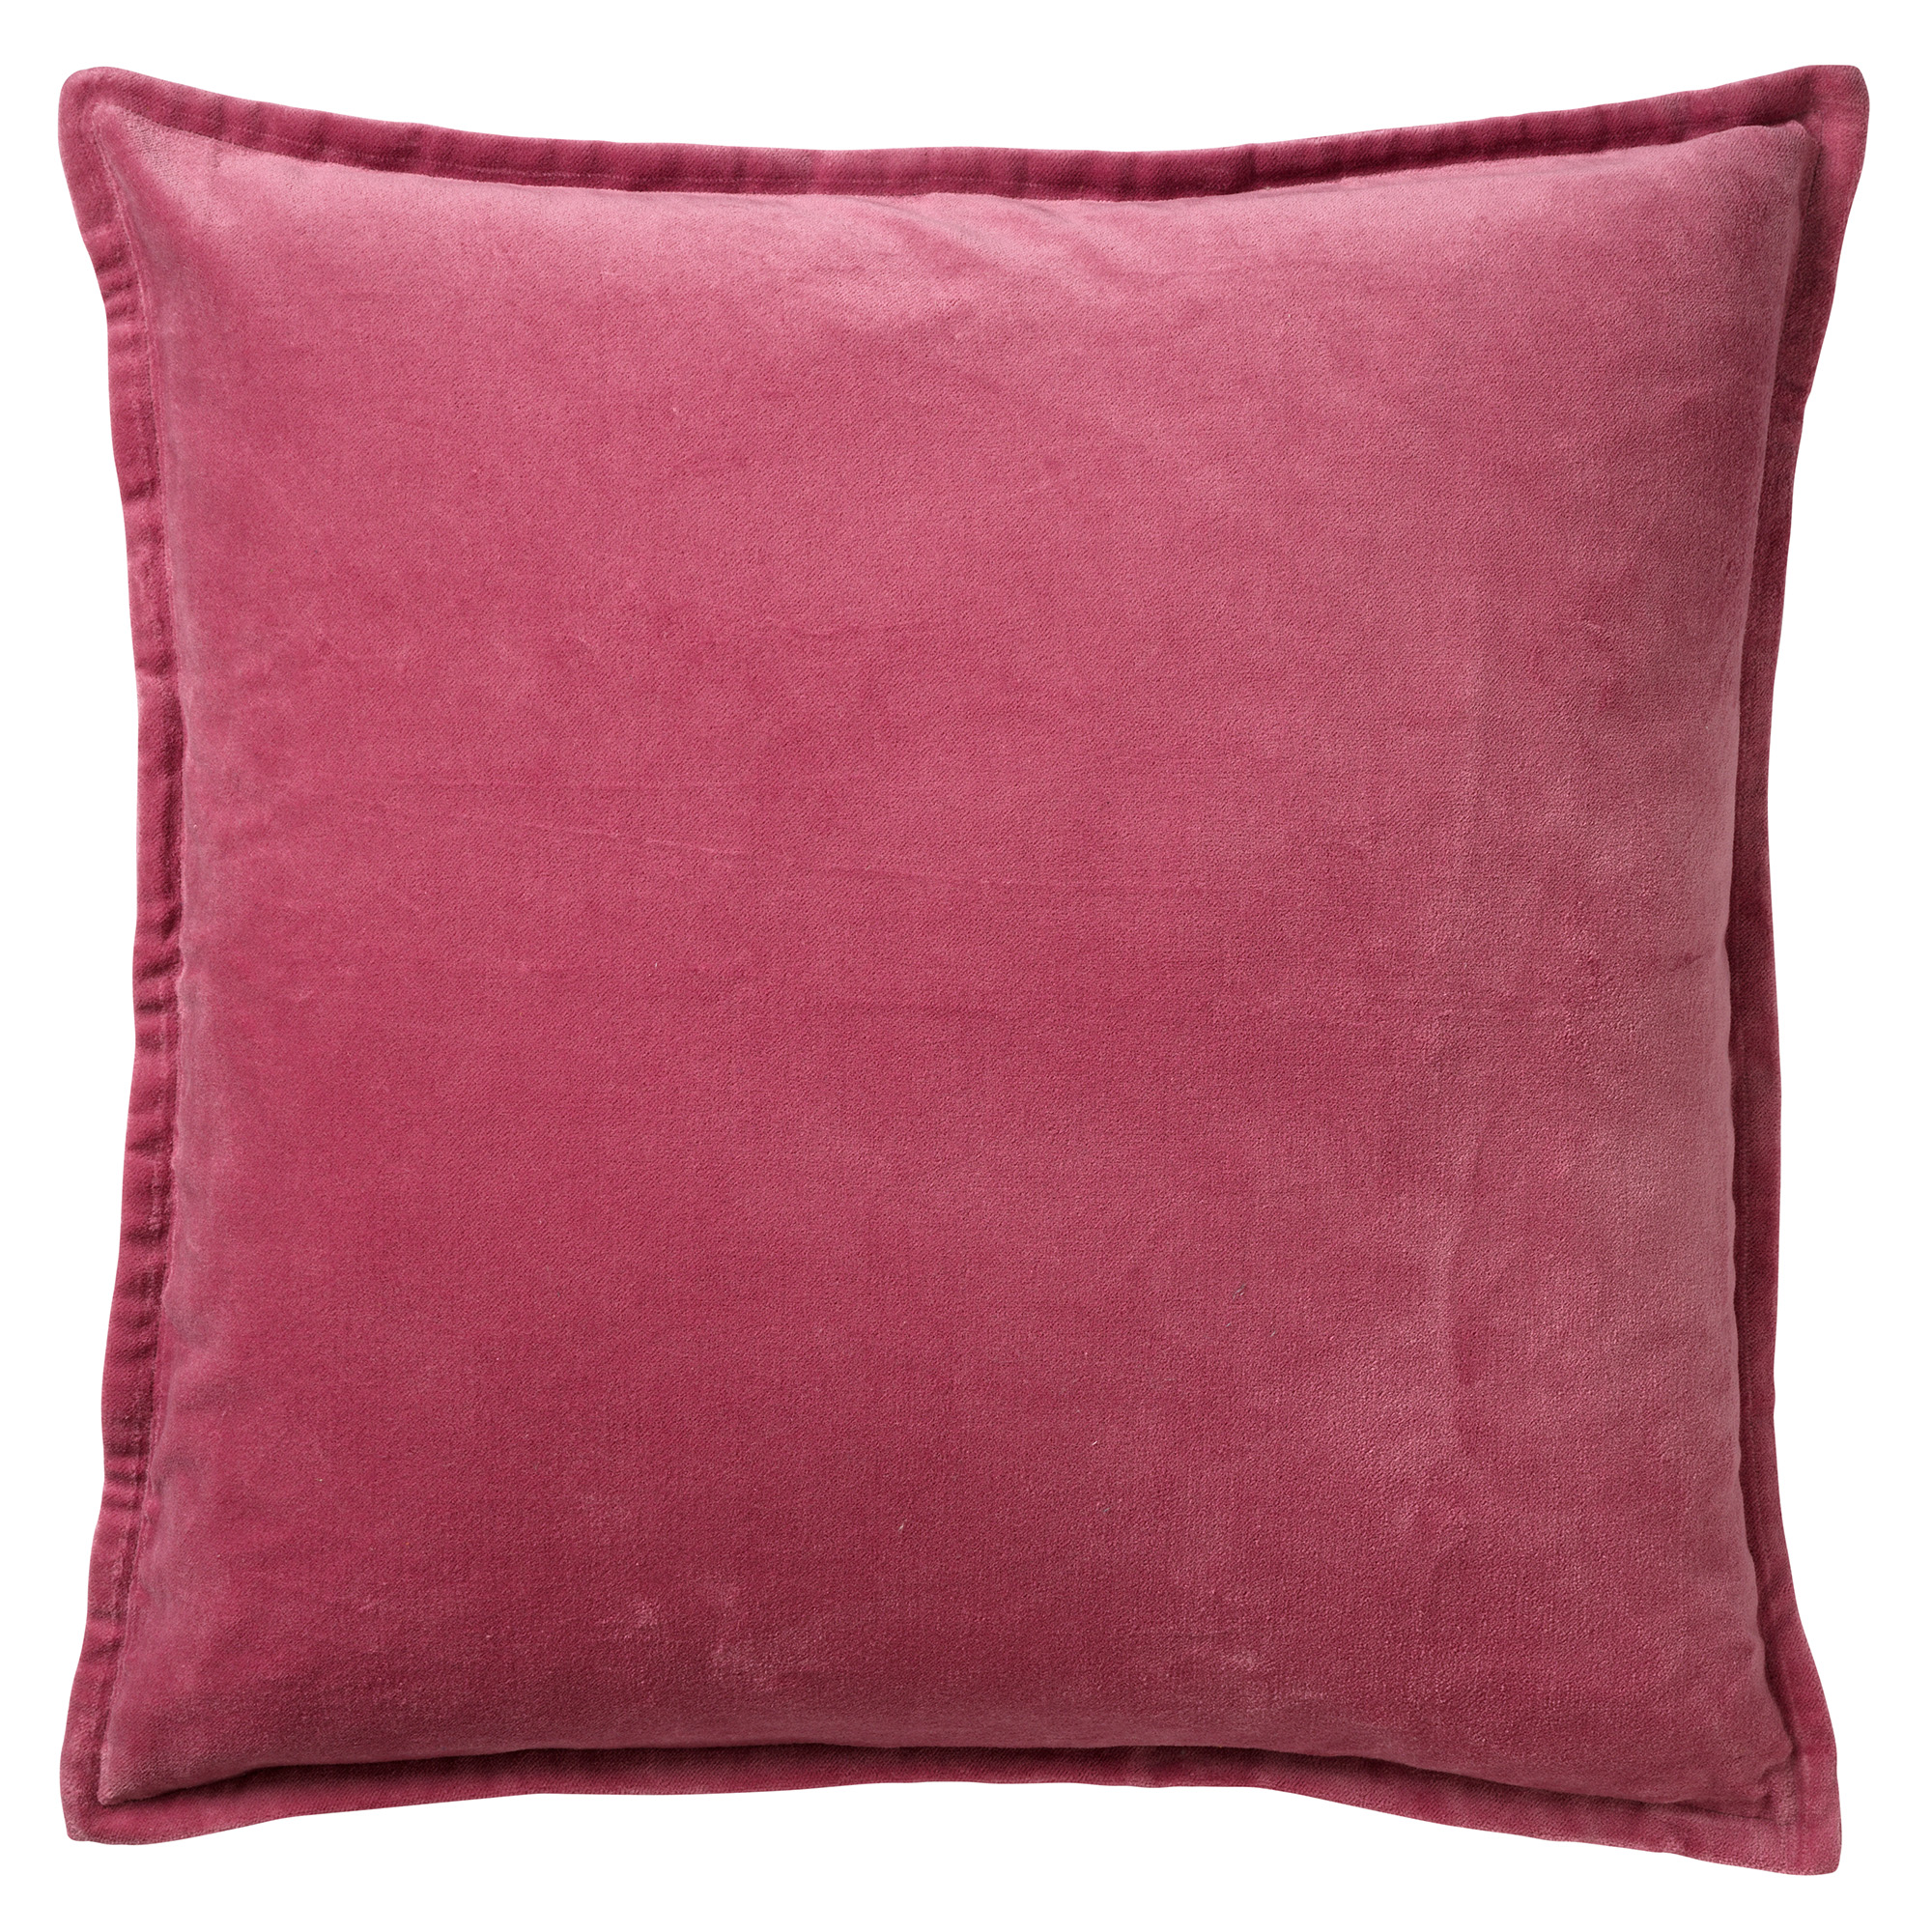 CAITH - Sierkussen velvet 100% katoen 50x50 cm - Heather Rose - roze